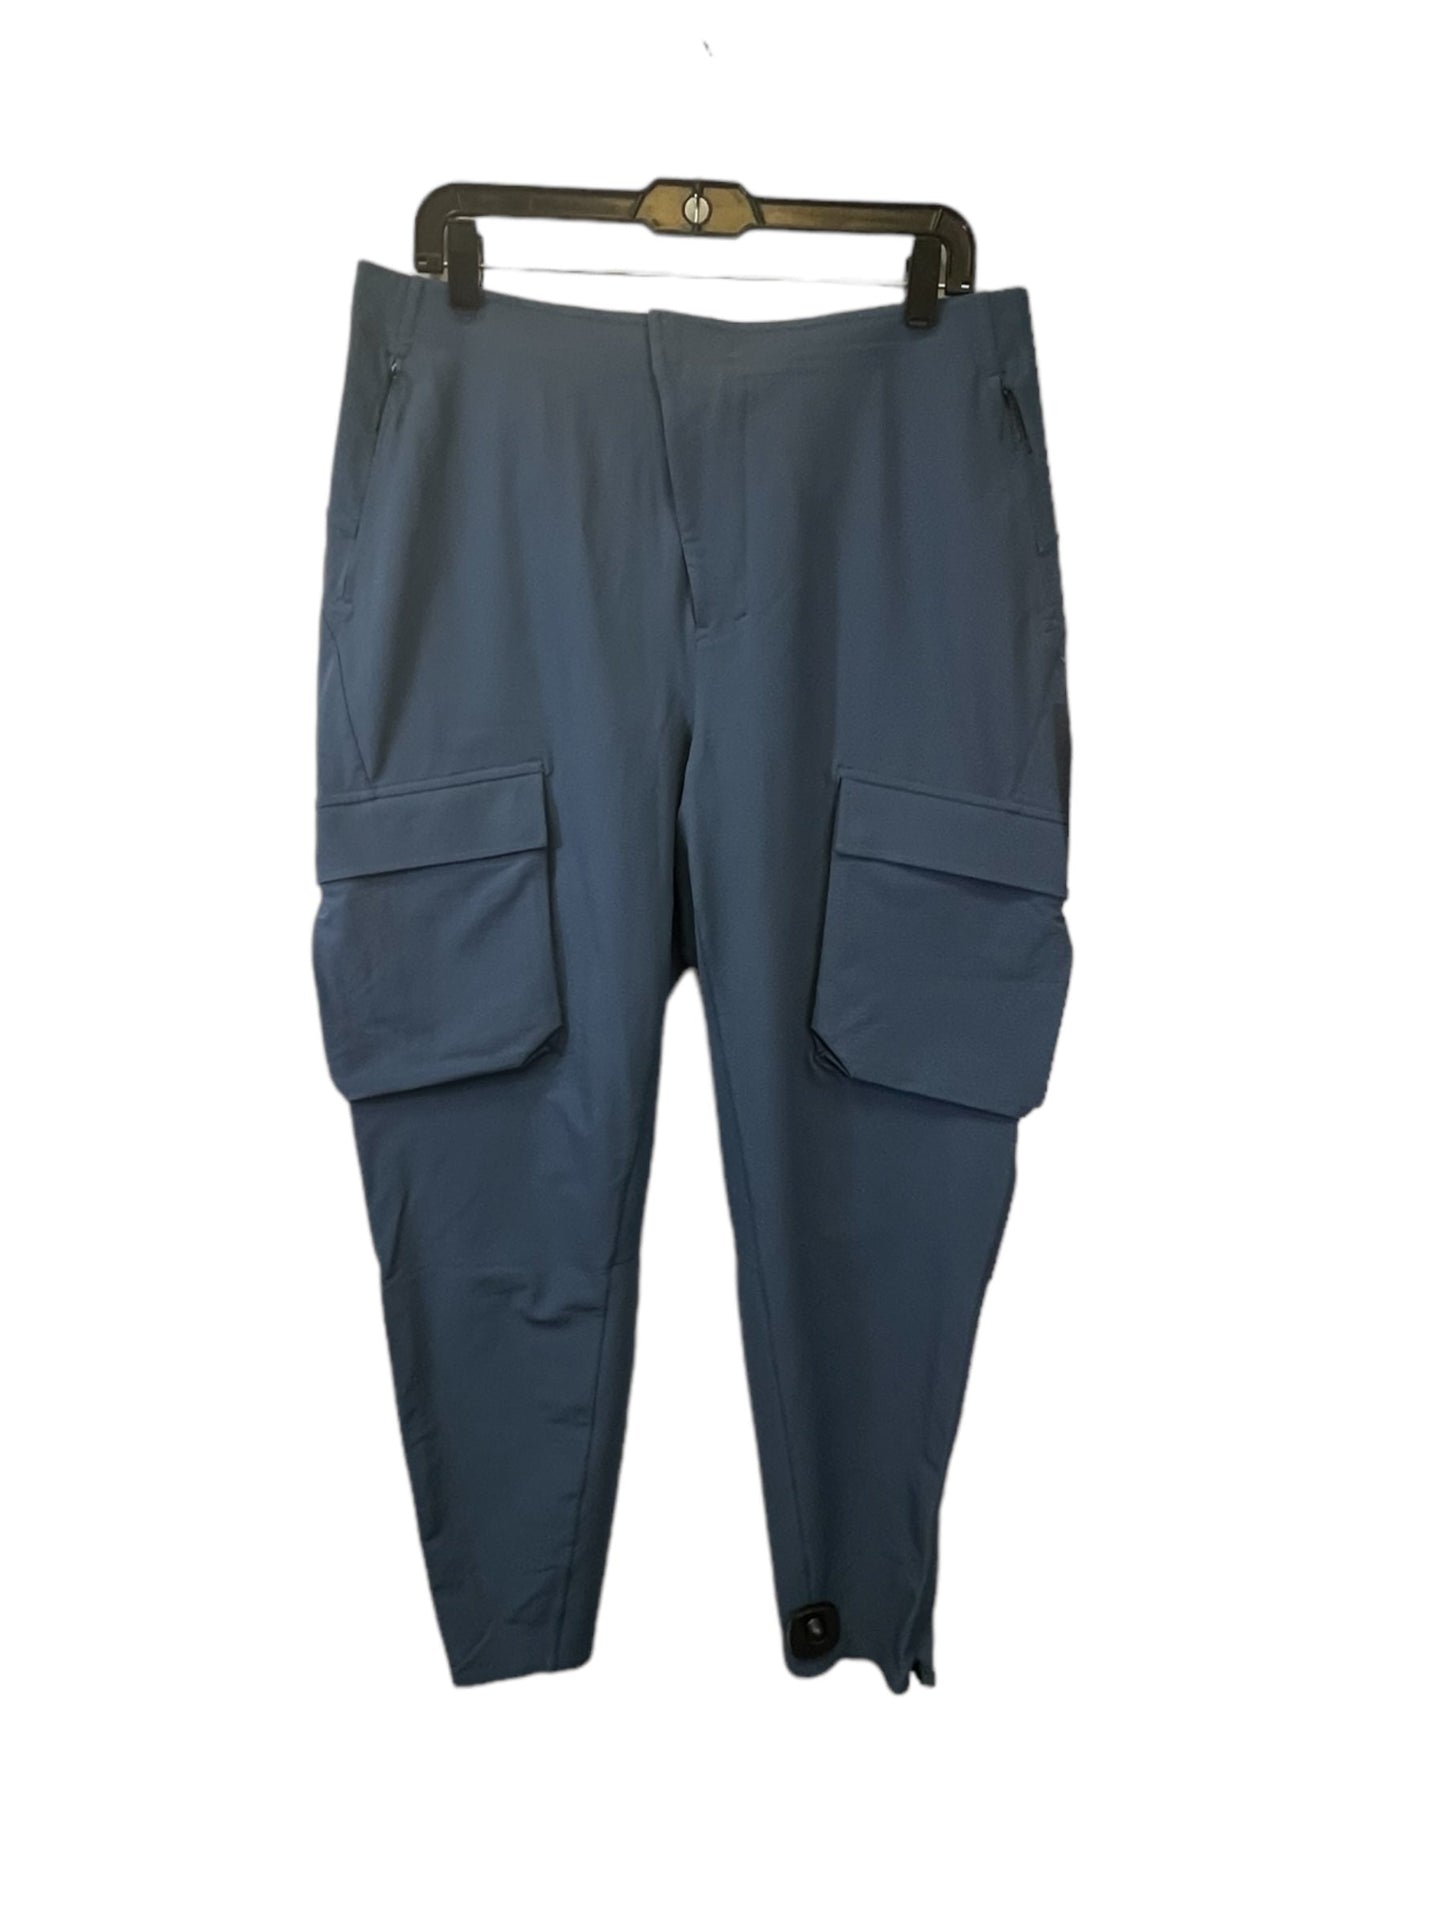 Blue Athletic Pants Lululemon, Size 12